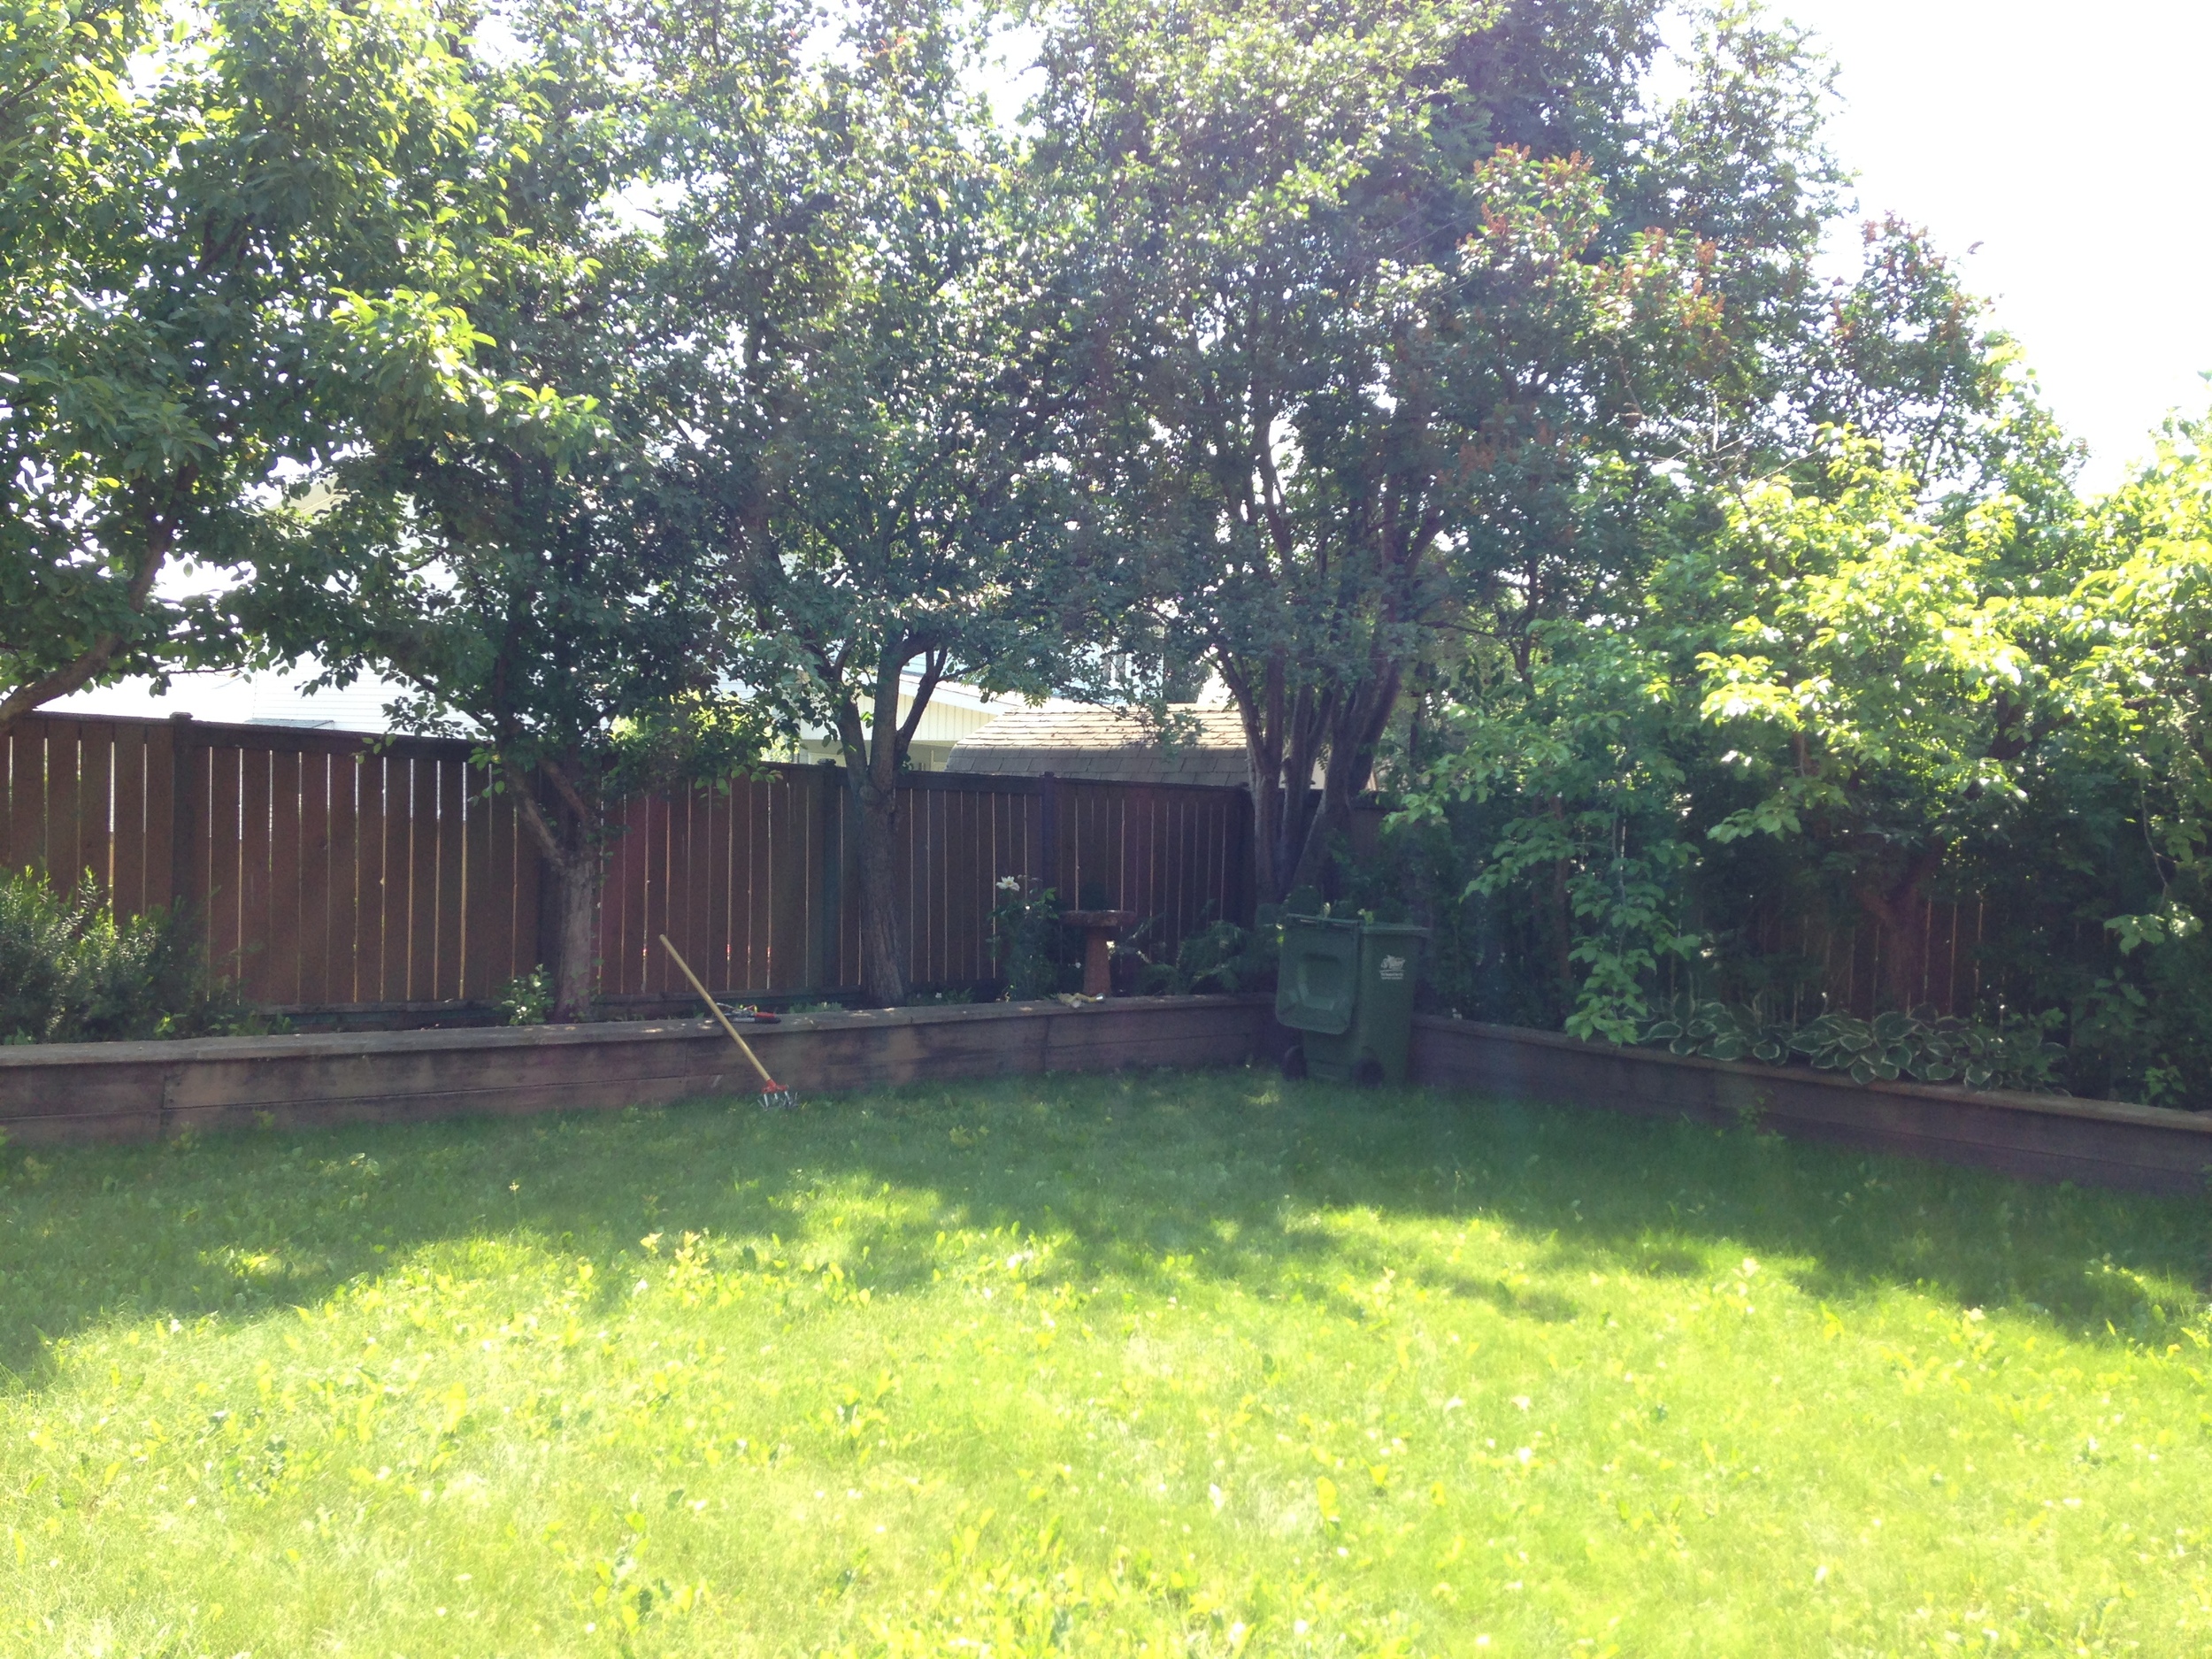 Backyard in Green - Summer